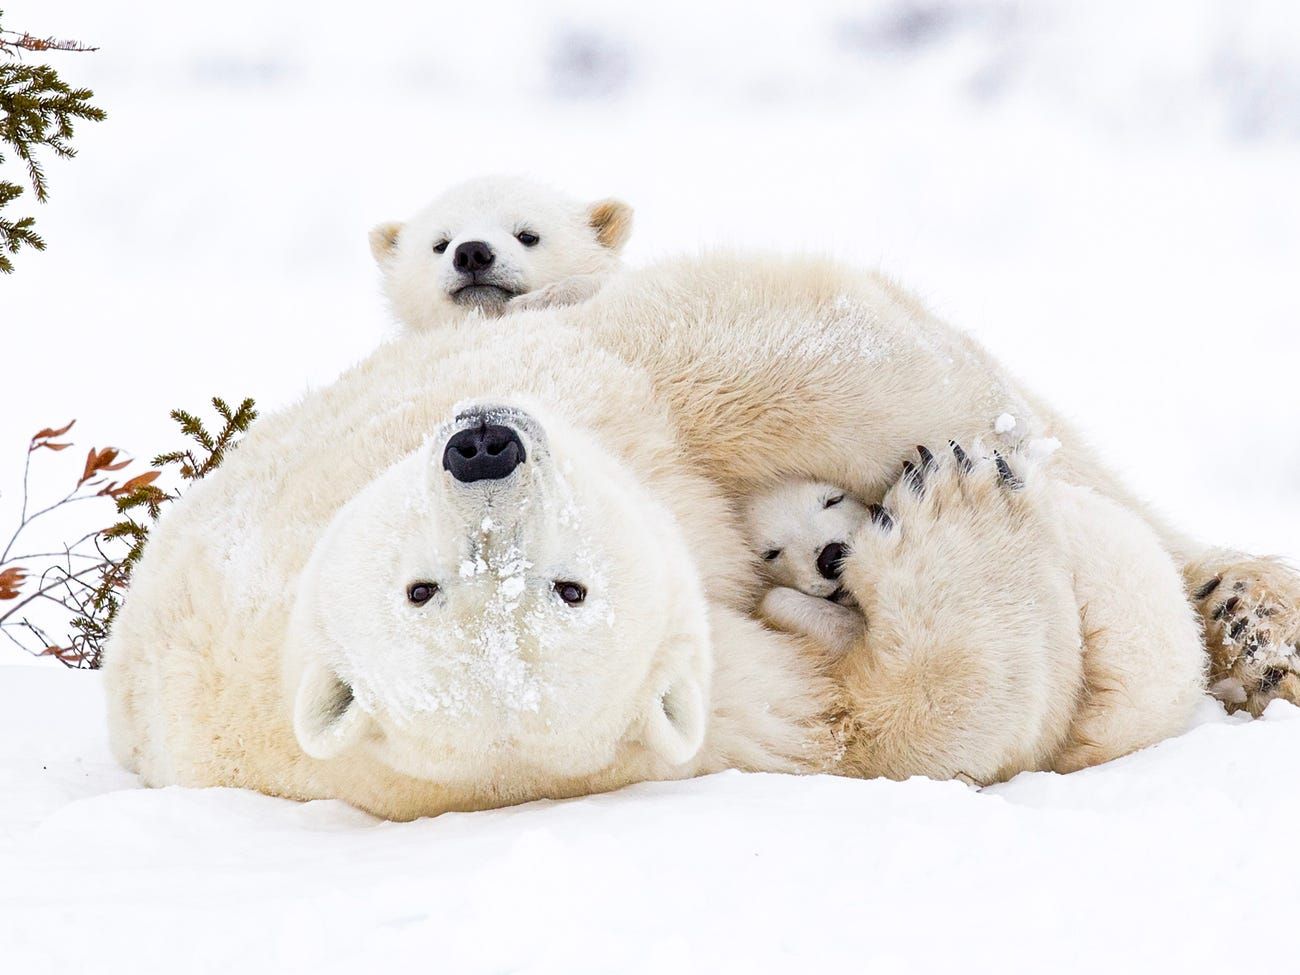 Bạn đã từng muốn chụp ảnh gấu Bắc cực hoang dã một cách chuyên nghiệp? Thưởng thức bộ sưu tập ảnh nhiếp ảnh người yêu thích động vật hoang dã nhưng lại thích gấu Bắc cực. Những bức ảnh chụp gấu Bắc cực trong thiên nhiên hoang dã đẹp mắt và đầy cảm xúc sẽ khiến bạn trầm trồ.